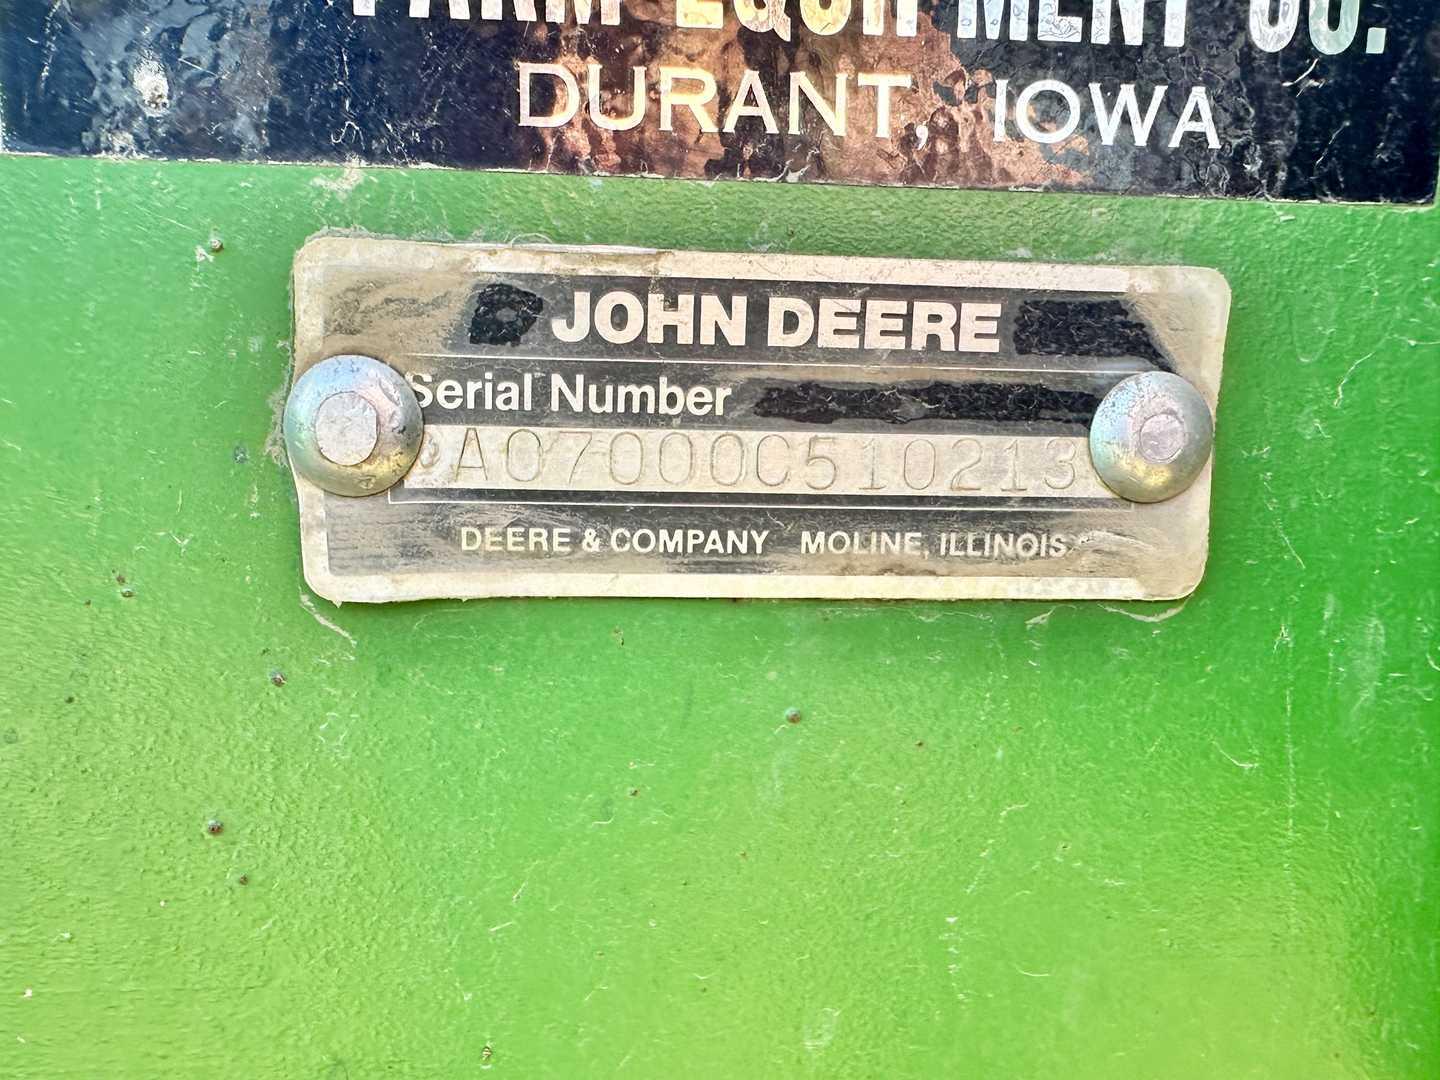 John Deere 7000 12R planter